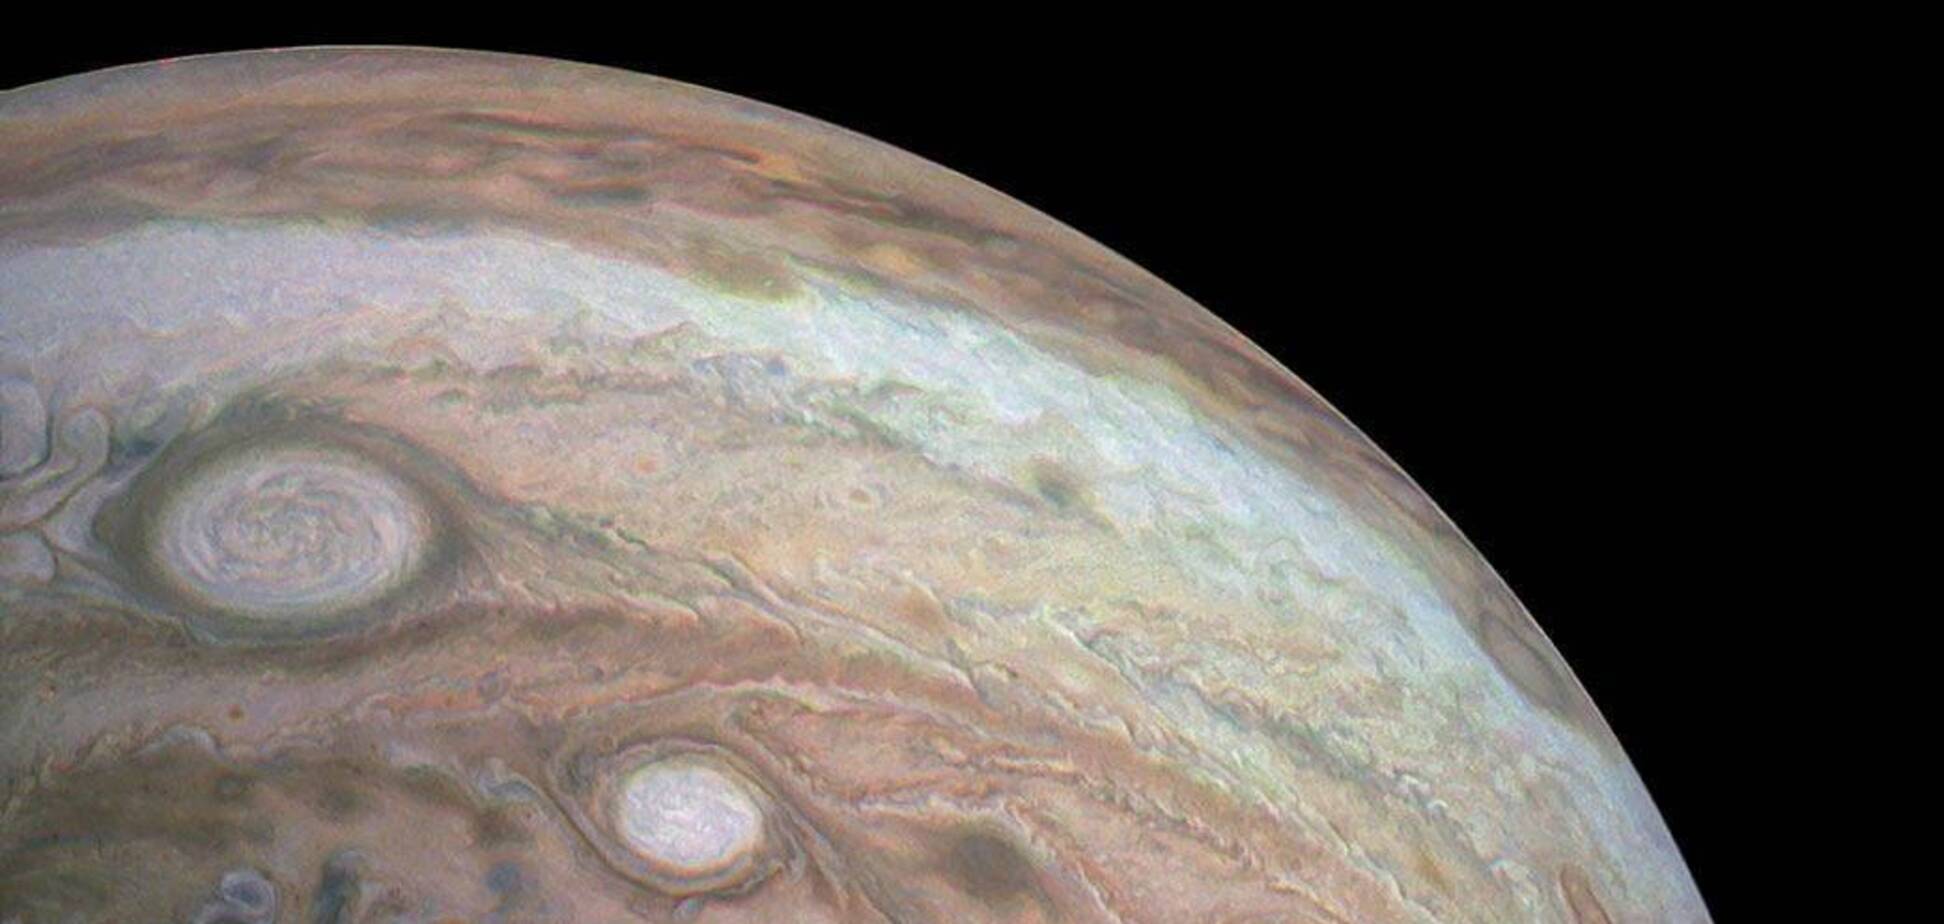  В космічному агентстві США опублікували незвичайні знімки Юпітера